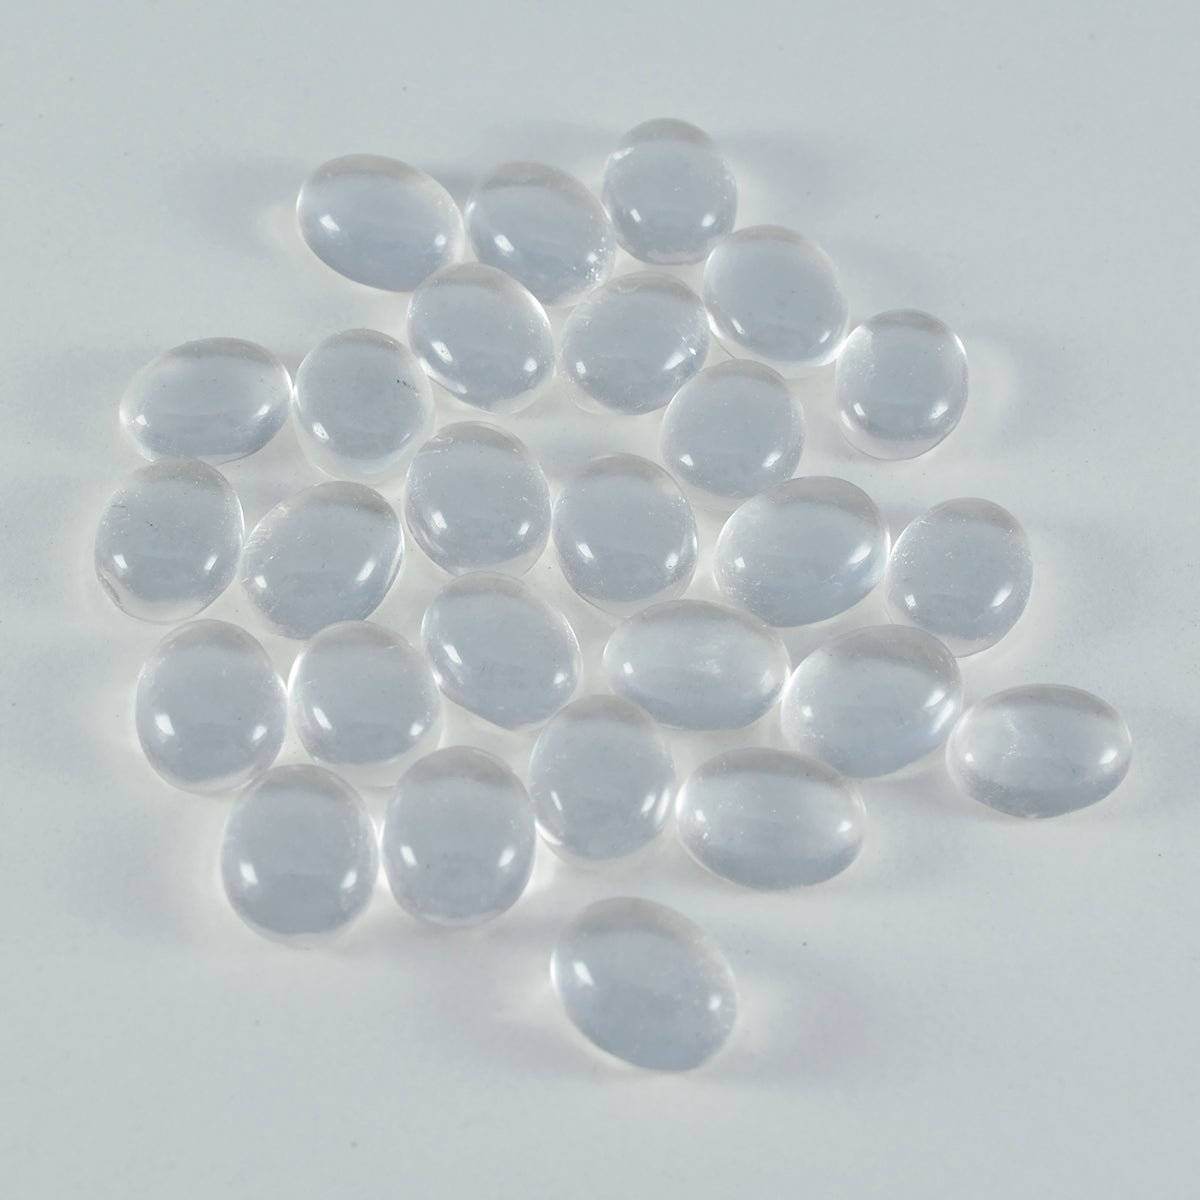 Riyogems 1 Stück weißer Kristallquarz-Cabochon, 7 x 9 mm, ovale Form, wunderschöner Qualitäts-Edelstein